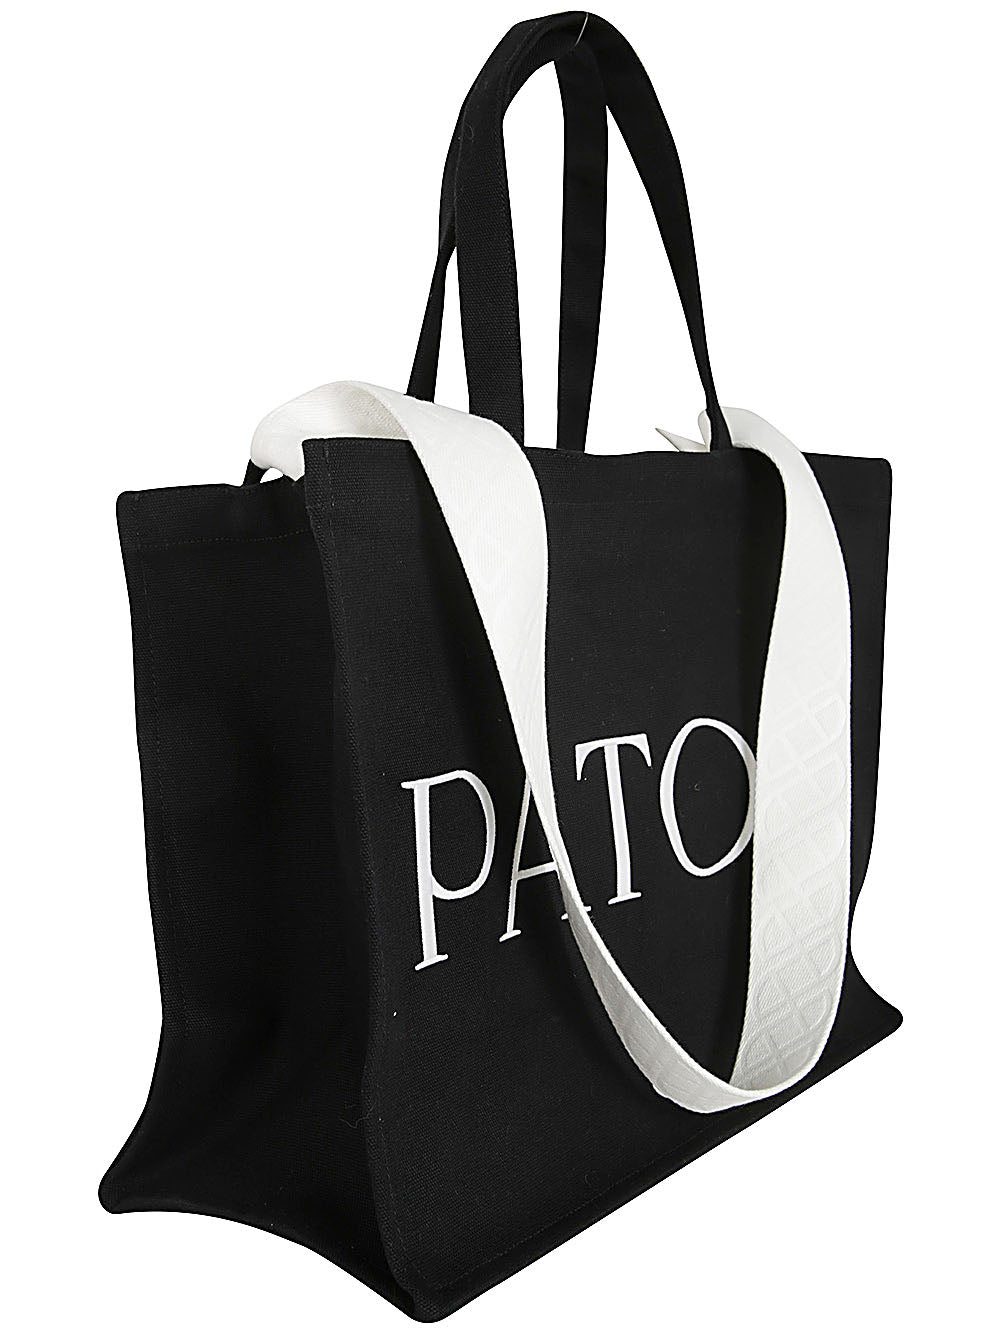 Patou Large Tote Bag